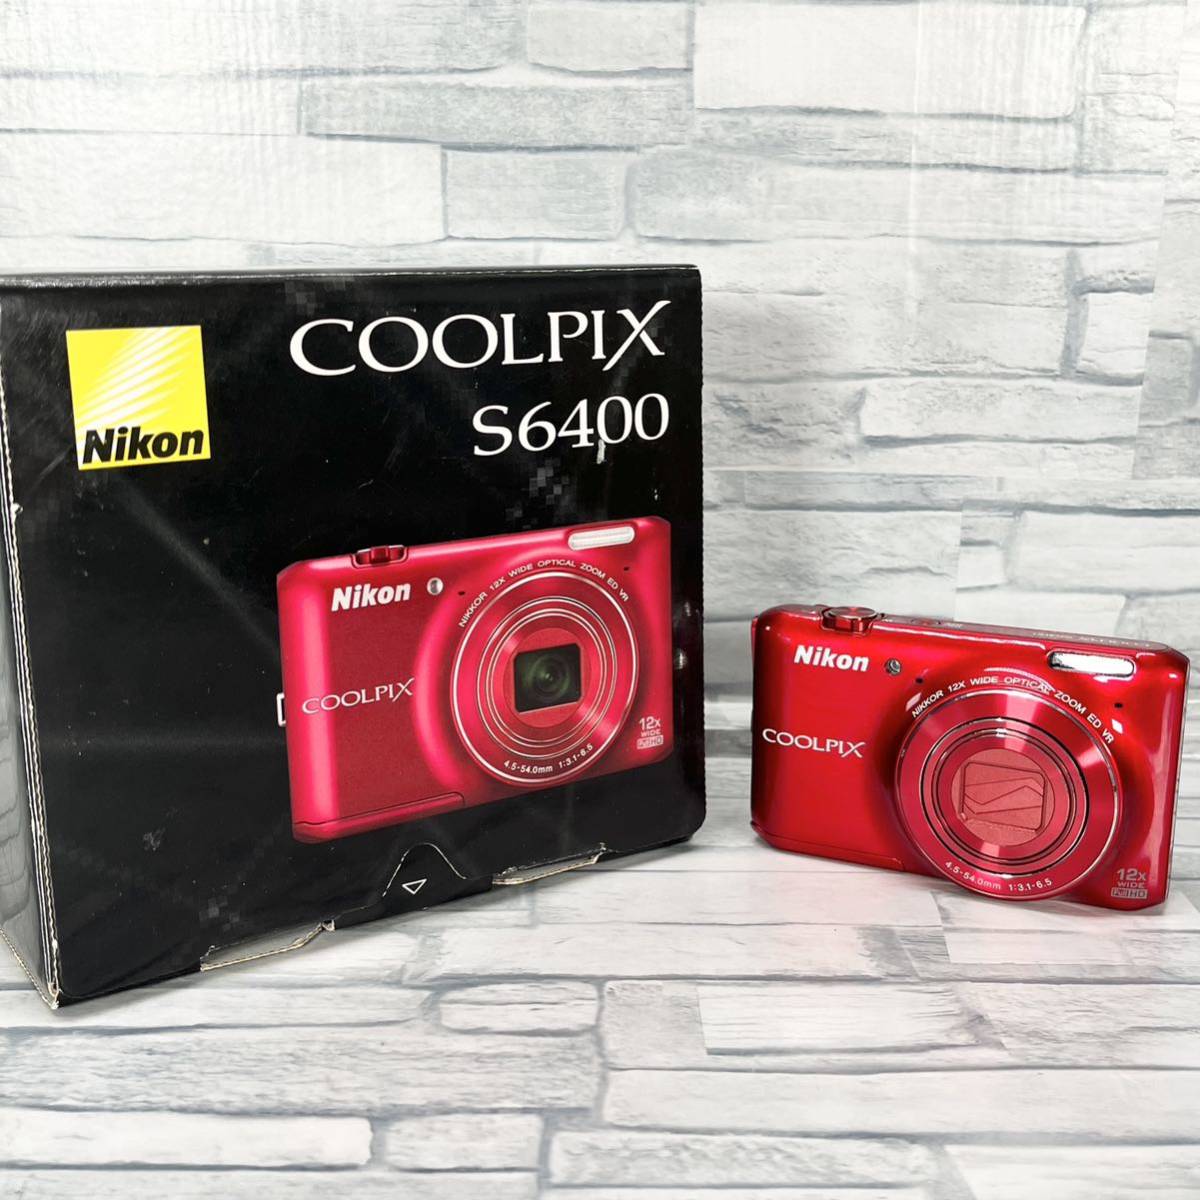 【Nikon】デジタルカメラ COOLPIX S6400 タッチパネル液晶 光学12倍ズーム グロッシーレッド S6400RD